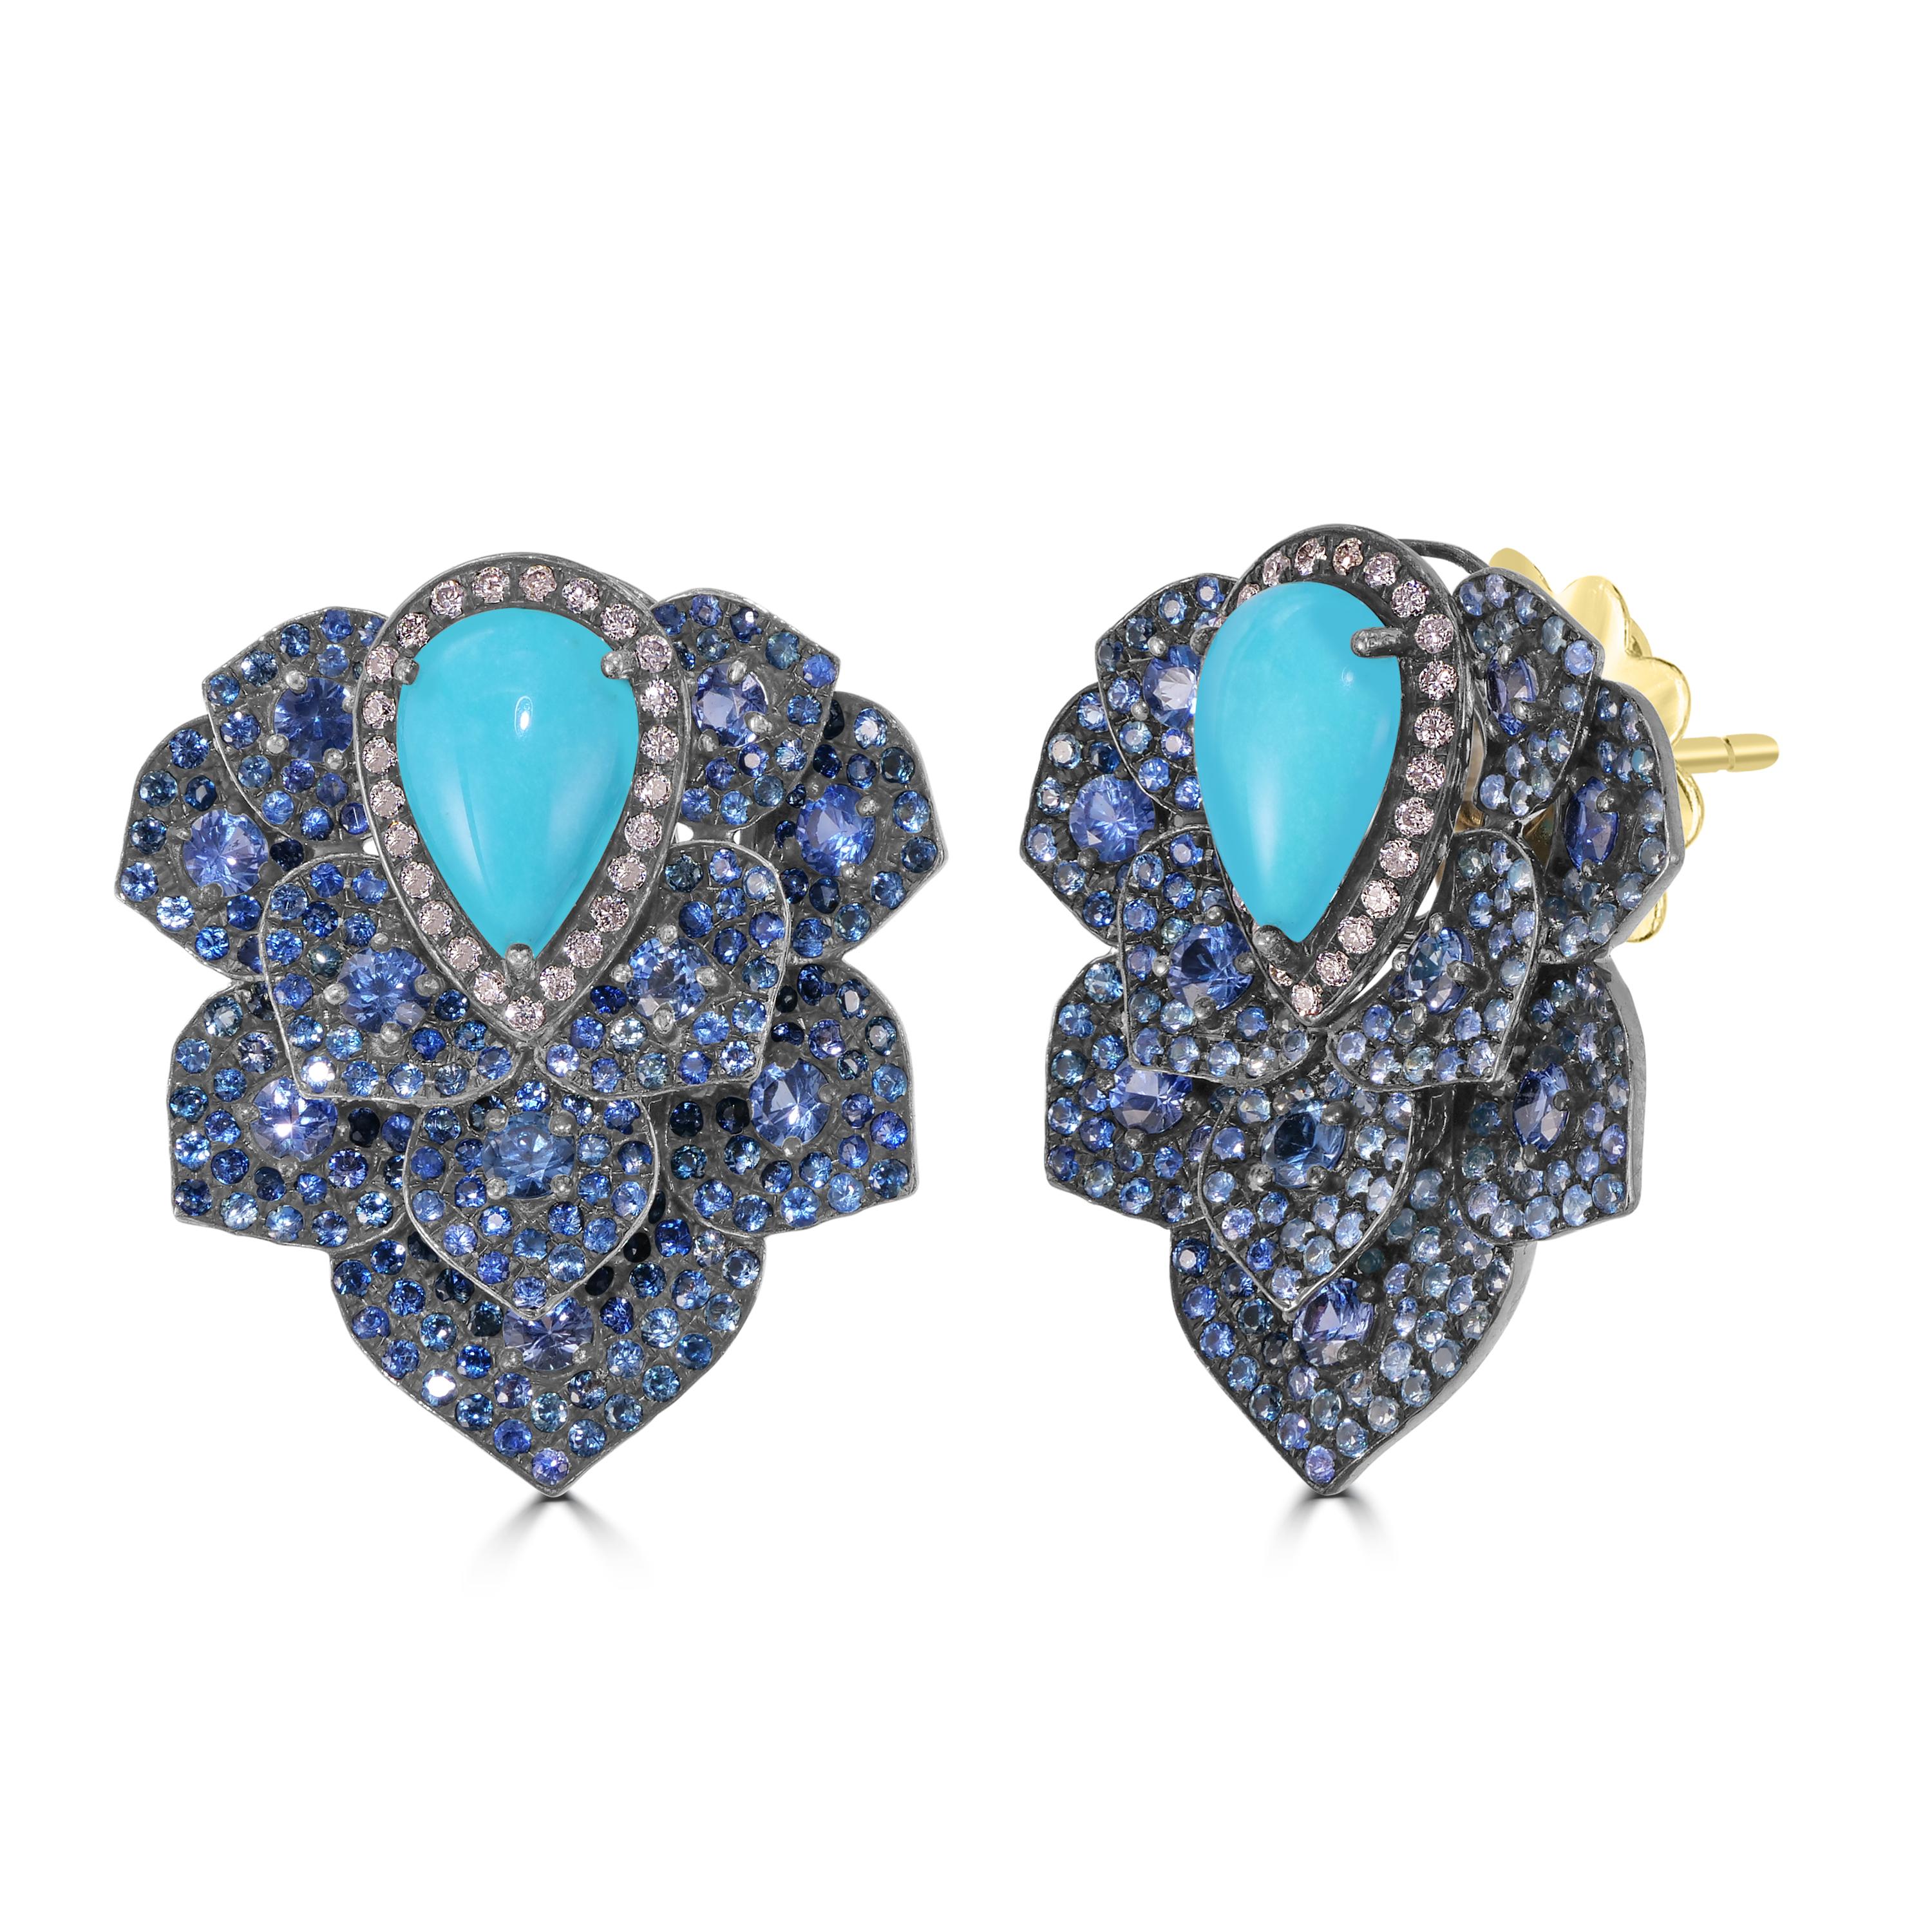 Treten Sie ein in die bezaubernde Welt der viktorianischen Eleganz mit unserer 11,18 Cttw. Türkis, blauer Saphir und Diamant-Ohrstecker. Diese Ohrringe sind eine meisterhafte Verschmelzung von kompliziertem Design, leuchtenden Edelsteinen und